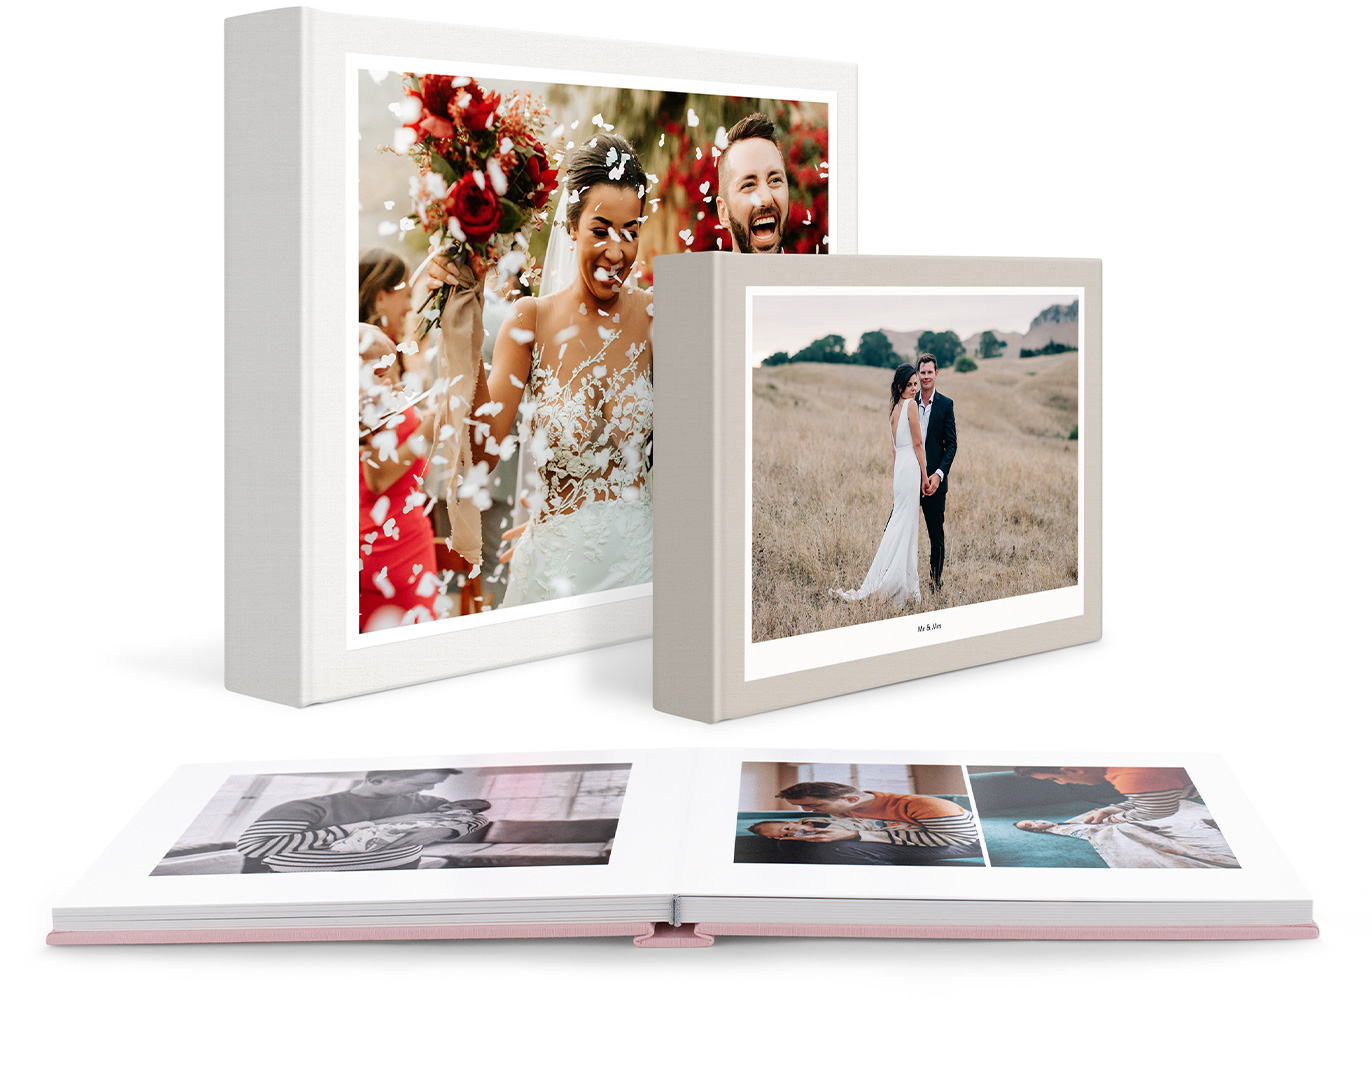 Tre album fotografici classici con immagini del matrimonio e della famiglia.